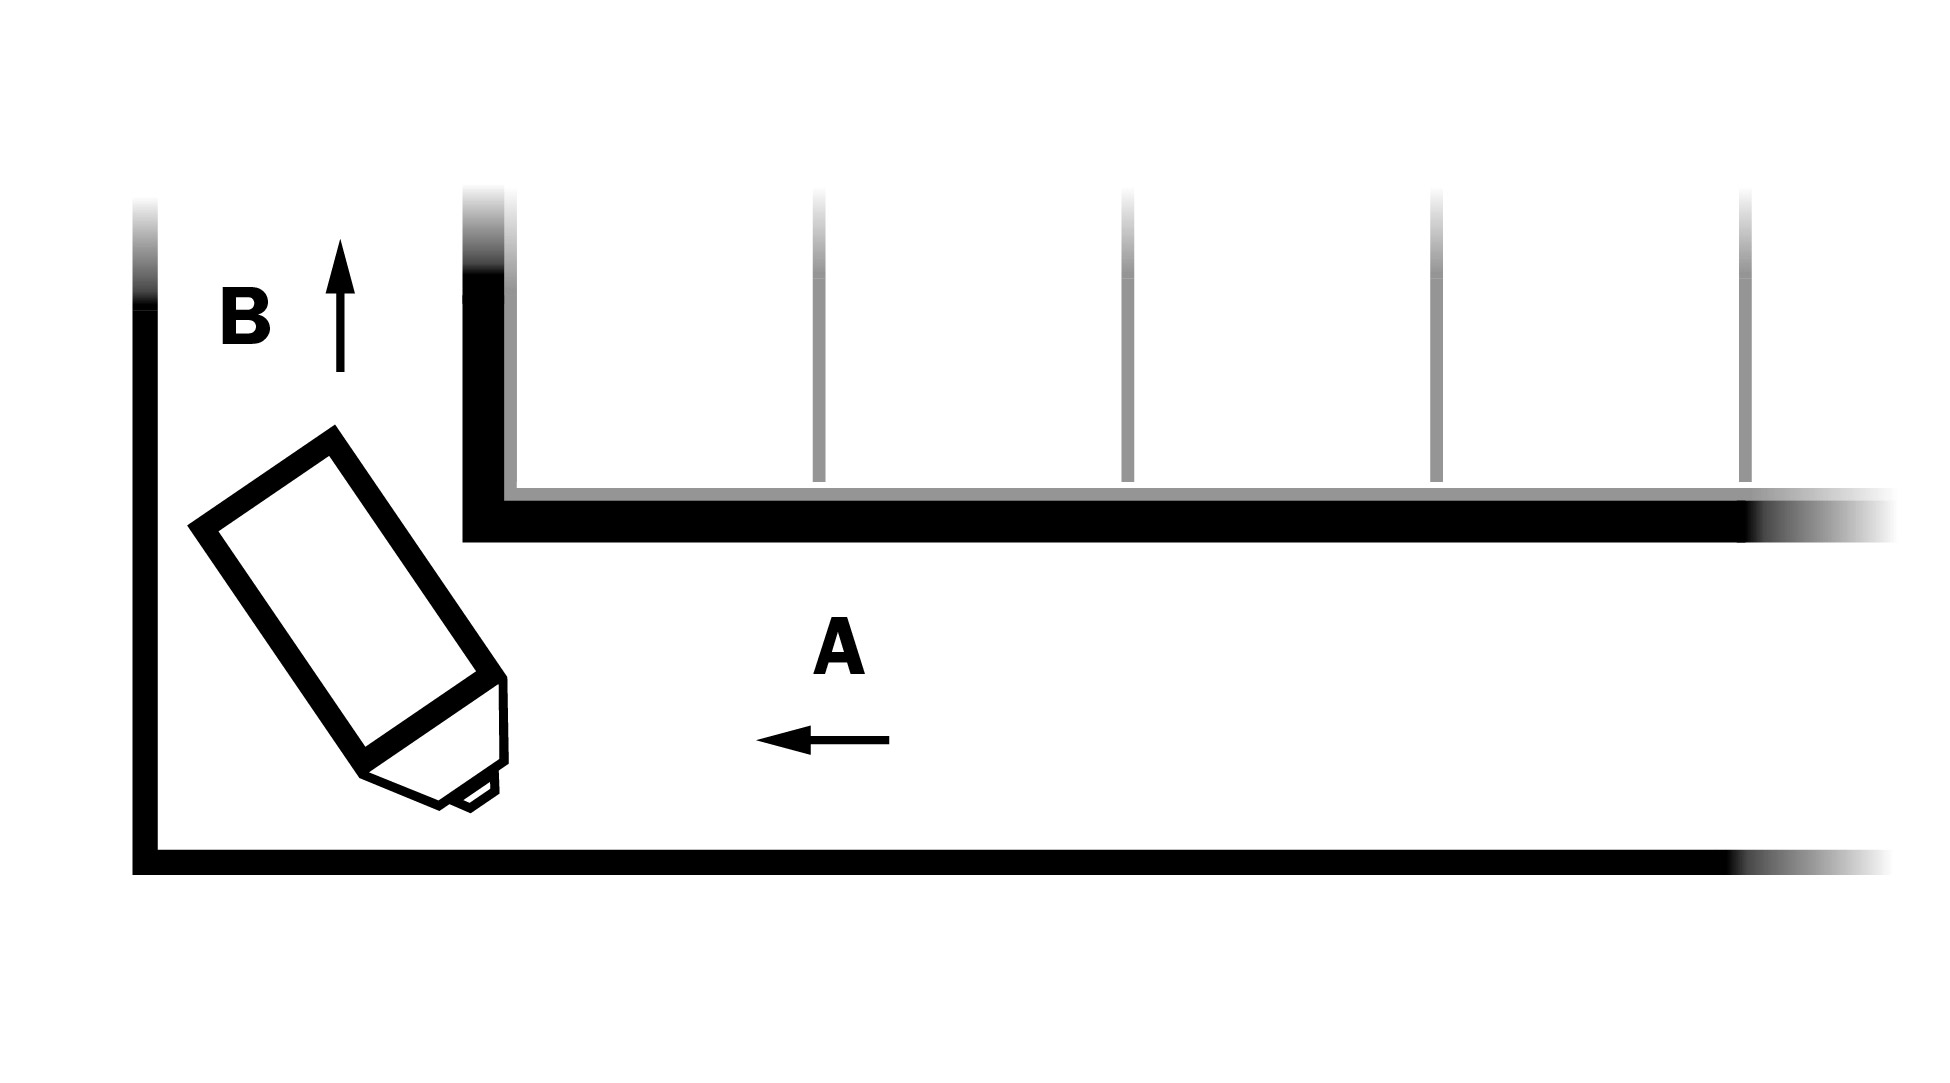 Croquis montrant, en plan au bas à gauche, un couloir d’alimentation dans un coin d’une étable et un chariot à aliments de forme rectangulaire positionné en angle pour y effectuer un virage. À la droite du chariot, une flèche surmontée d’un A majuscule pointe vers le chariot. À la gauche du croquis, au-dessus du chariot, une flèche avec un B majuscule à sa gauche pointe vers le haut.